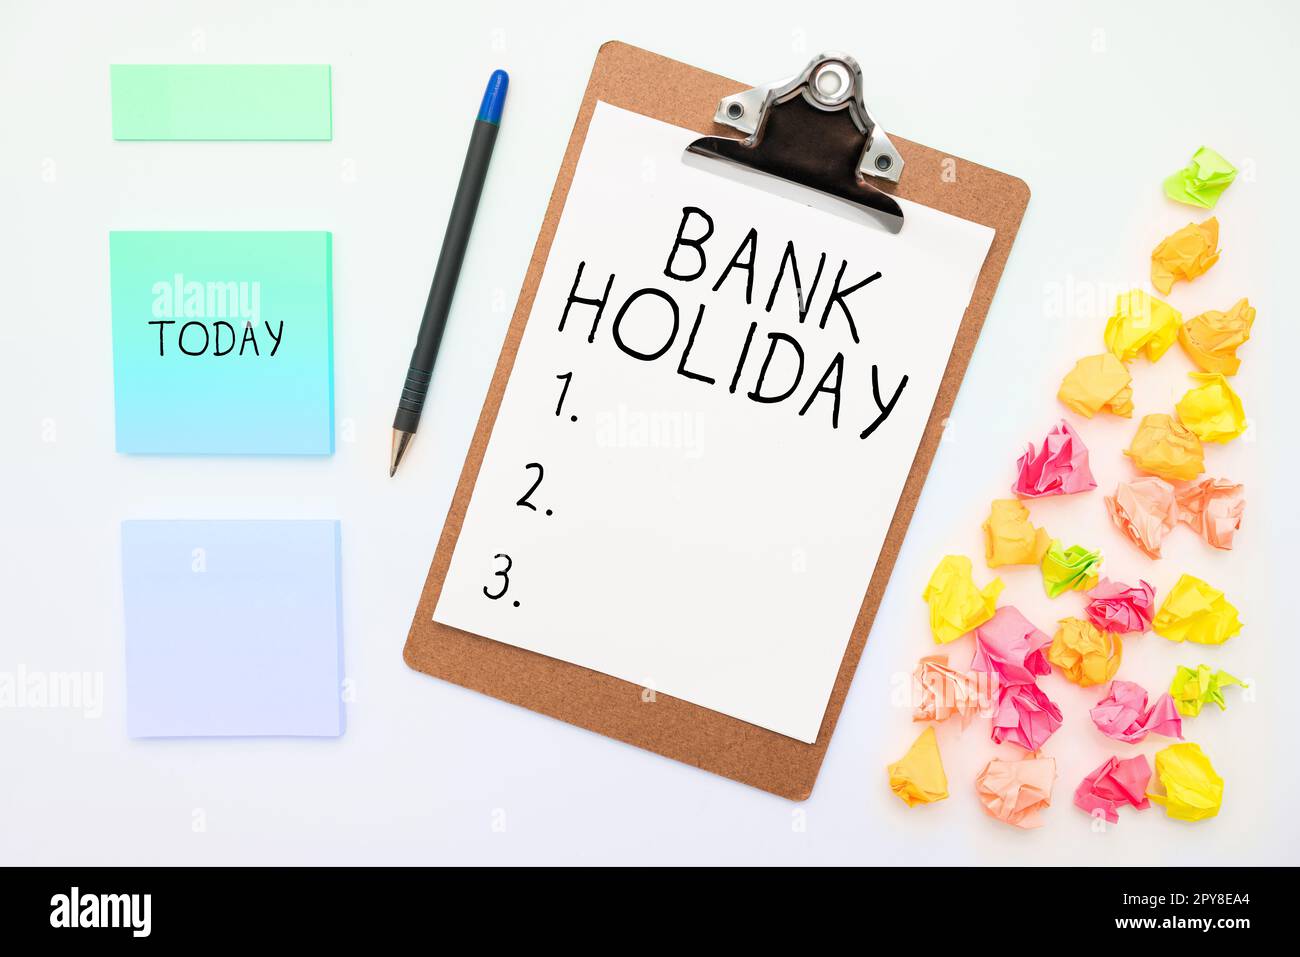 Konzeptionelle Darstellung an Feiertagen. Ein Wort, das an Einem Tag geschrieben wurde, an dem Banken offiziell als Feiertag geschlossen sind Stockfoto